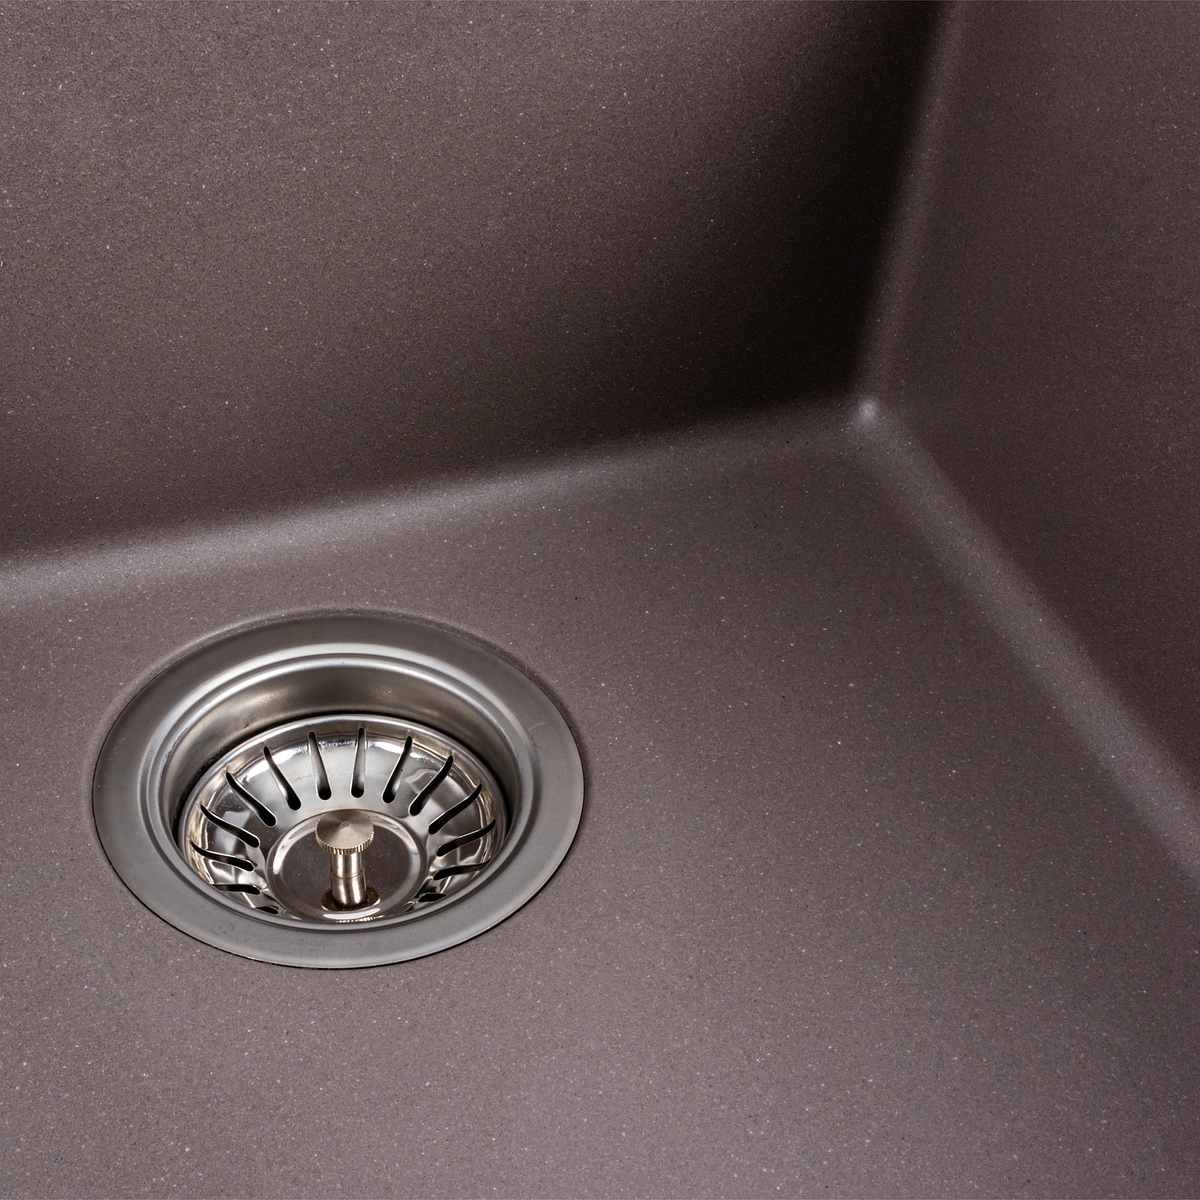 Мийка для кухні гранітна квадратна PLATINUM 4040 RUBA 440x440x200мм без сифону коричнева PLS-A40837